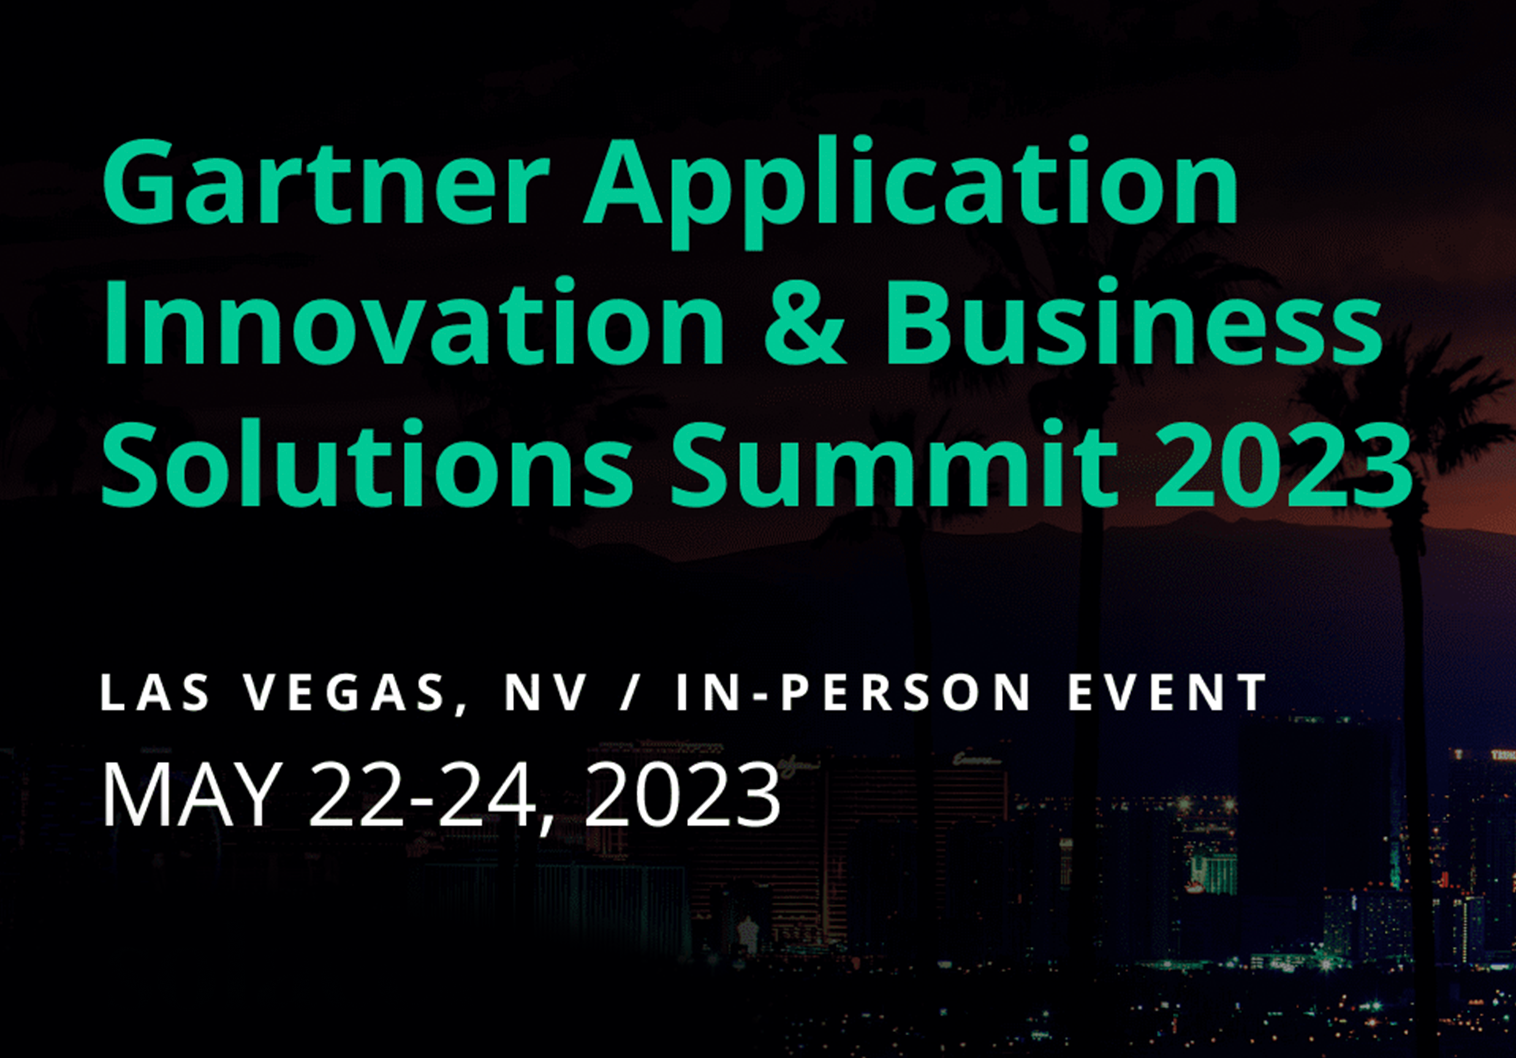 Gartner Application Innovation & Business Solutions Summit 2023